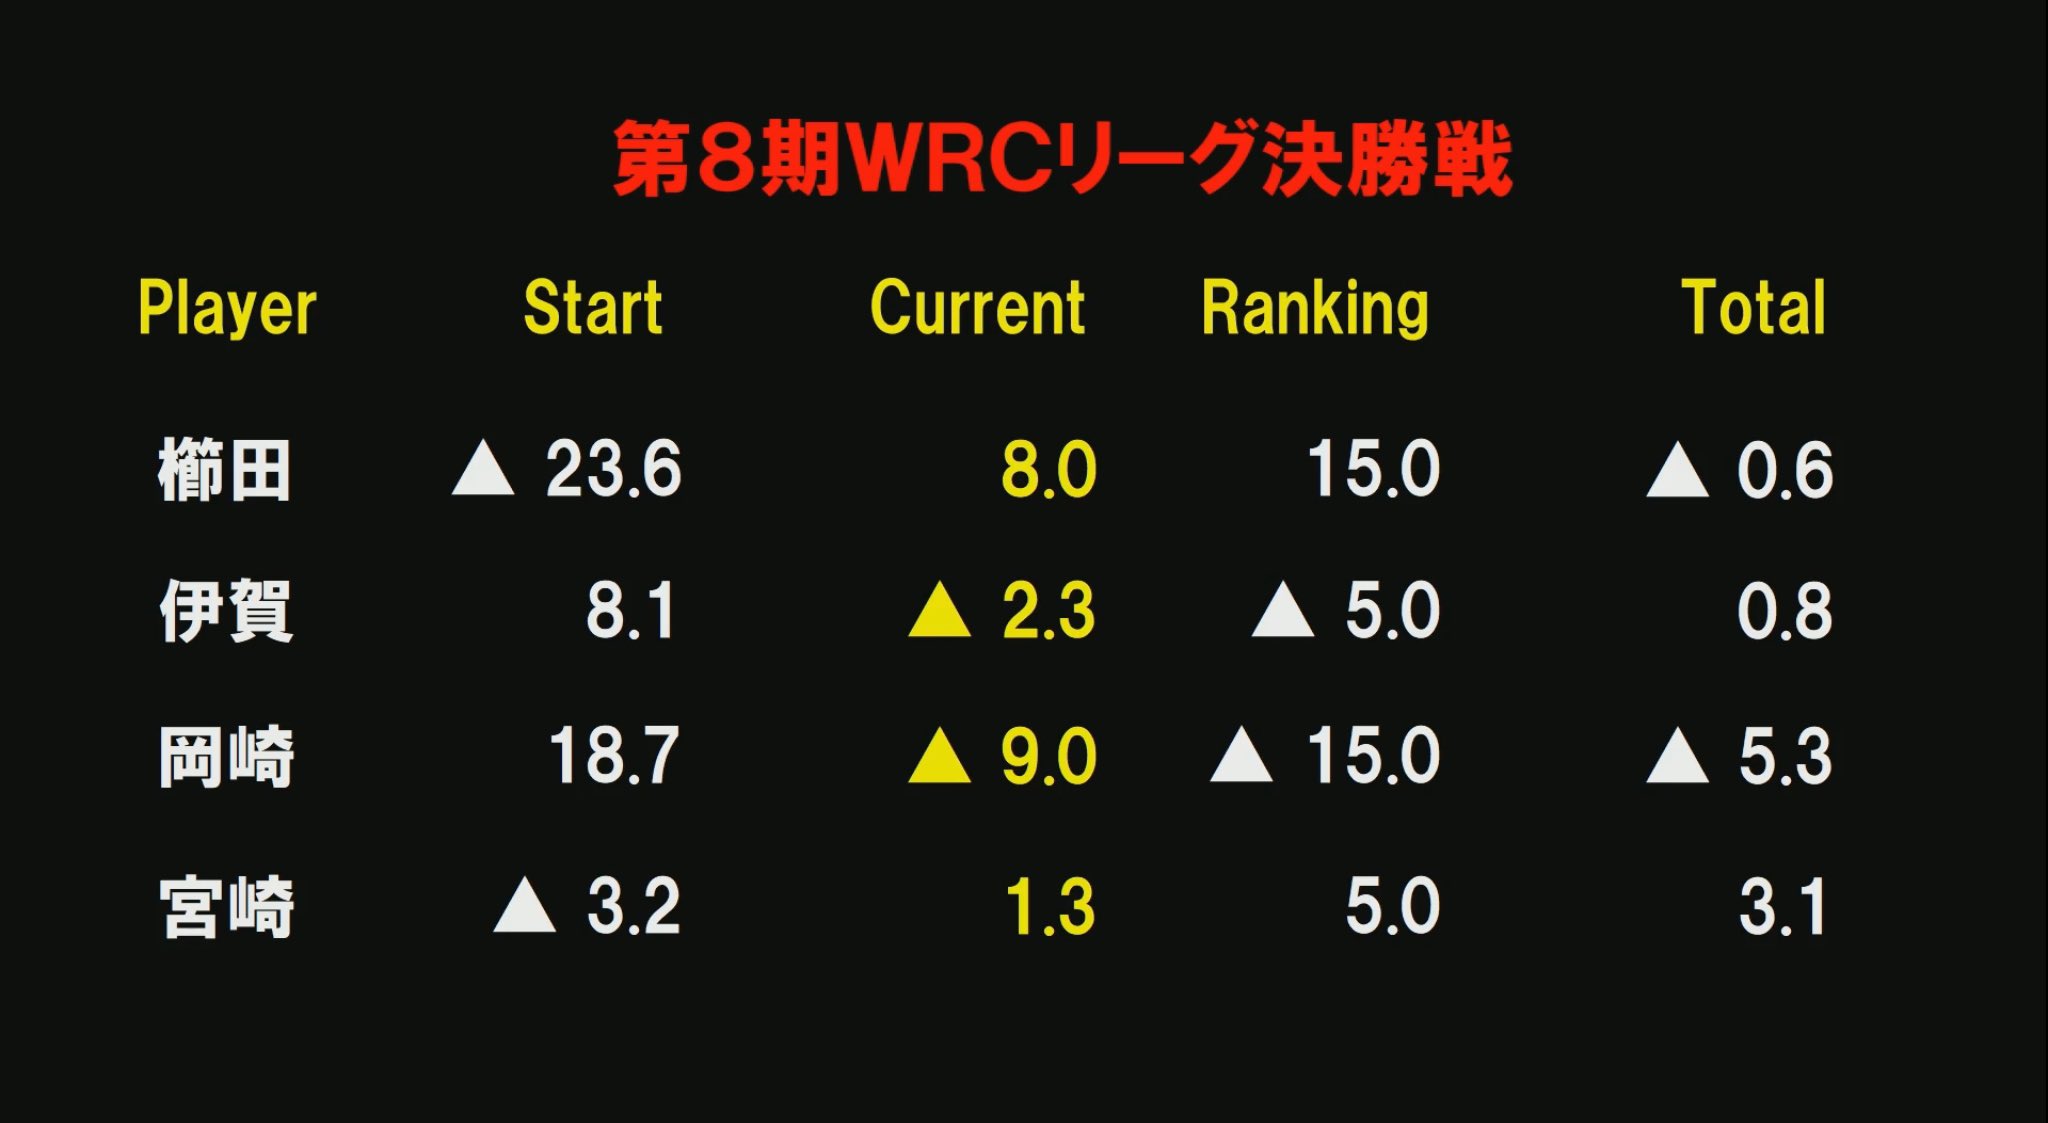 日本プロ麻雀連盟 4着目で親番を迎えた岡崎 リーチタンヤオ一発ツモ裏3でダントツに 一発と裏がどちらかは当たり前のように出ています T Co Icbredomei Twitter